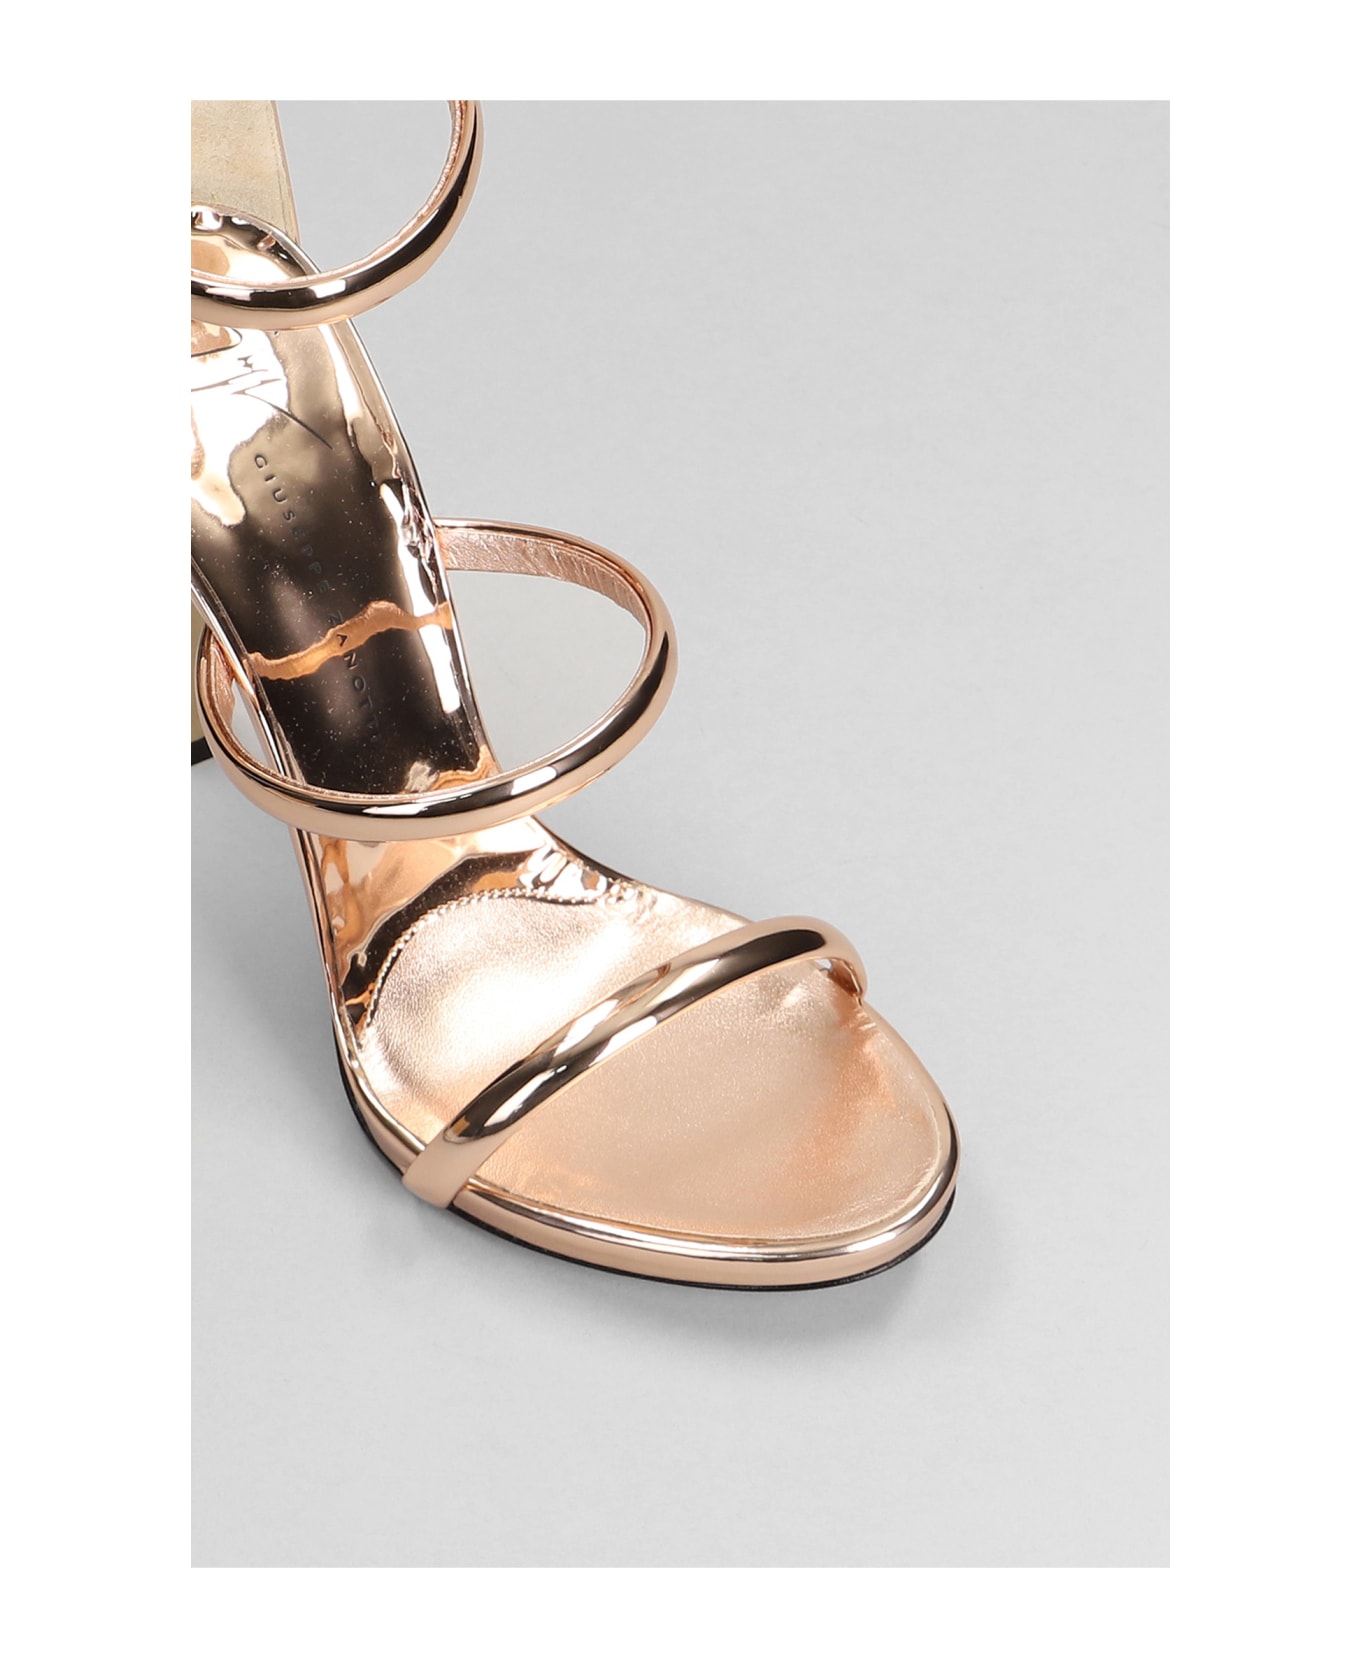 Giuseppe Zanotti Harmony Sandals In Copper Patent Leather - copper